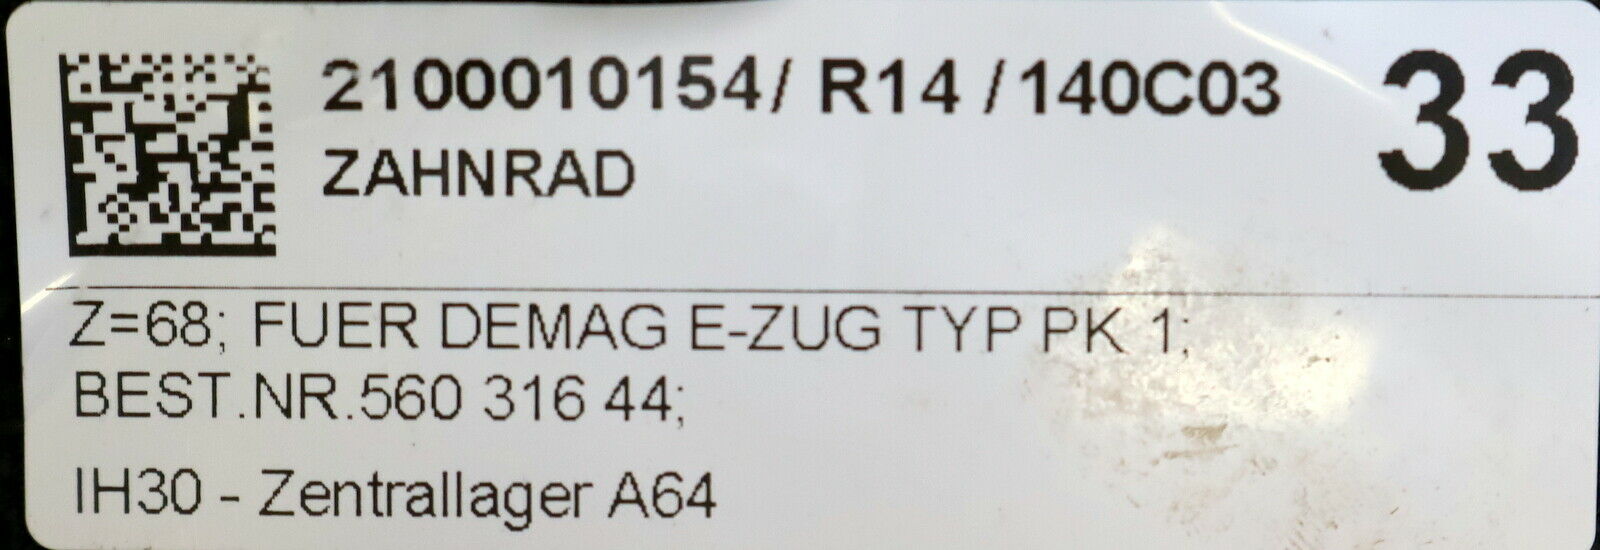 DEMAG Zahnrad mit Z=68 Breite 16,9mm Art.Nr. 56031644 für DEMAG E-Zug PK1